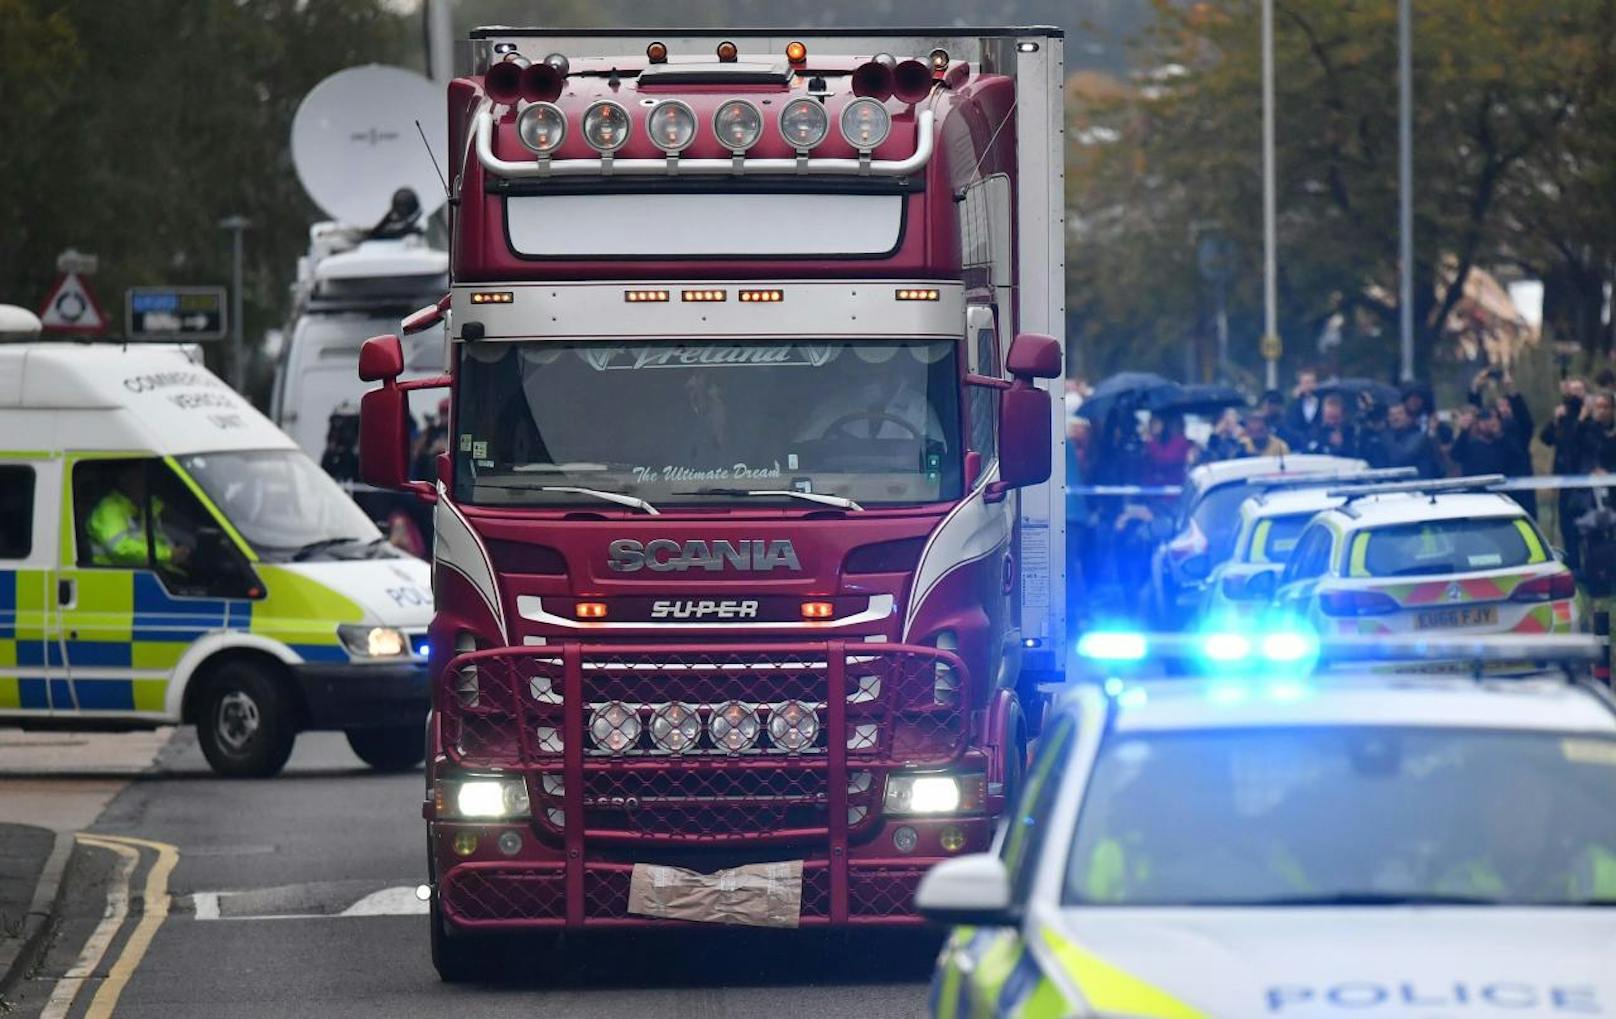 Der 25-jährige Fahrer aus Nordirland sei wegen Mordverdachts festgenommen worden, teilte die Polizei am Mittwoch mit.